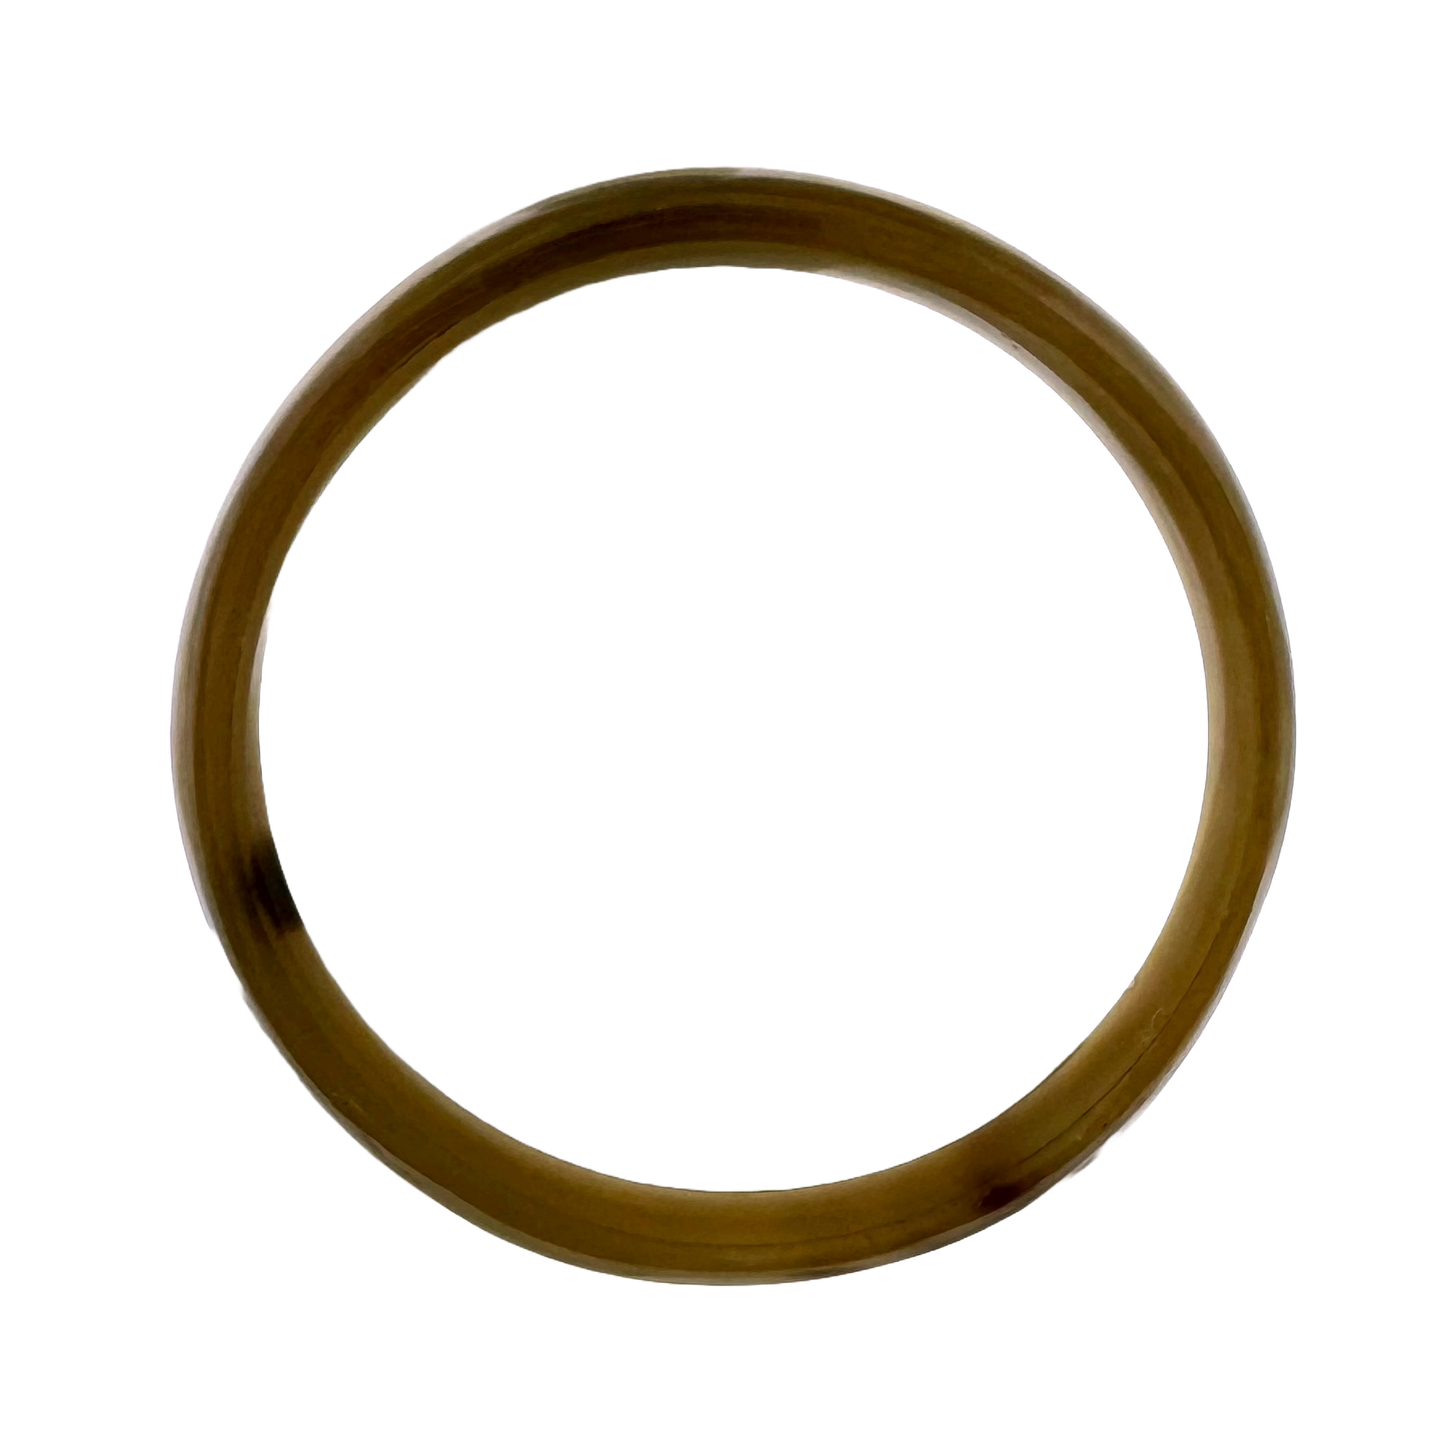 Horn Bangle Bracelet - Small